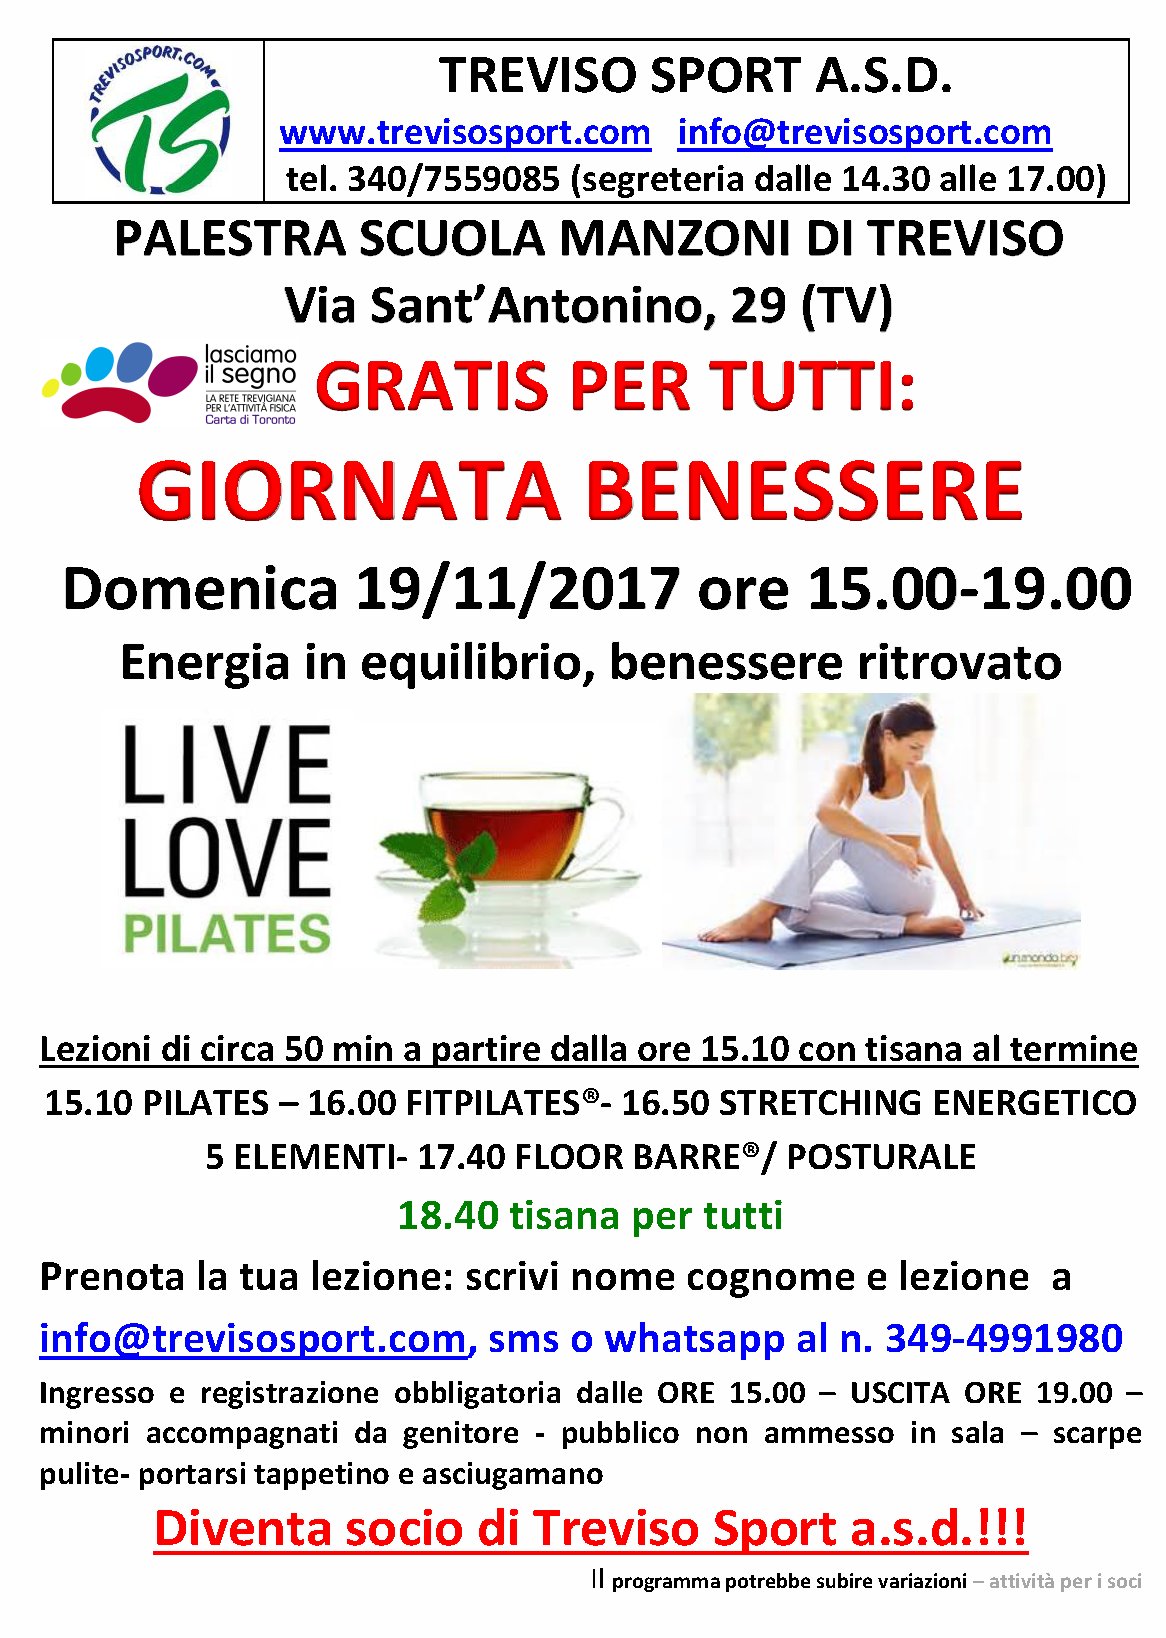 Gratis Giornata Benessere 19 11 17 Treviso Sport A S D